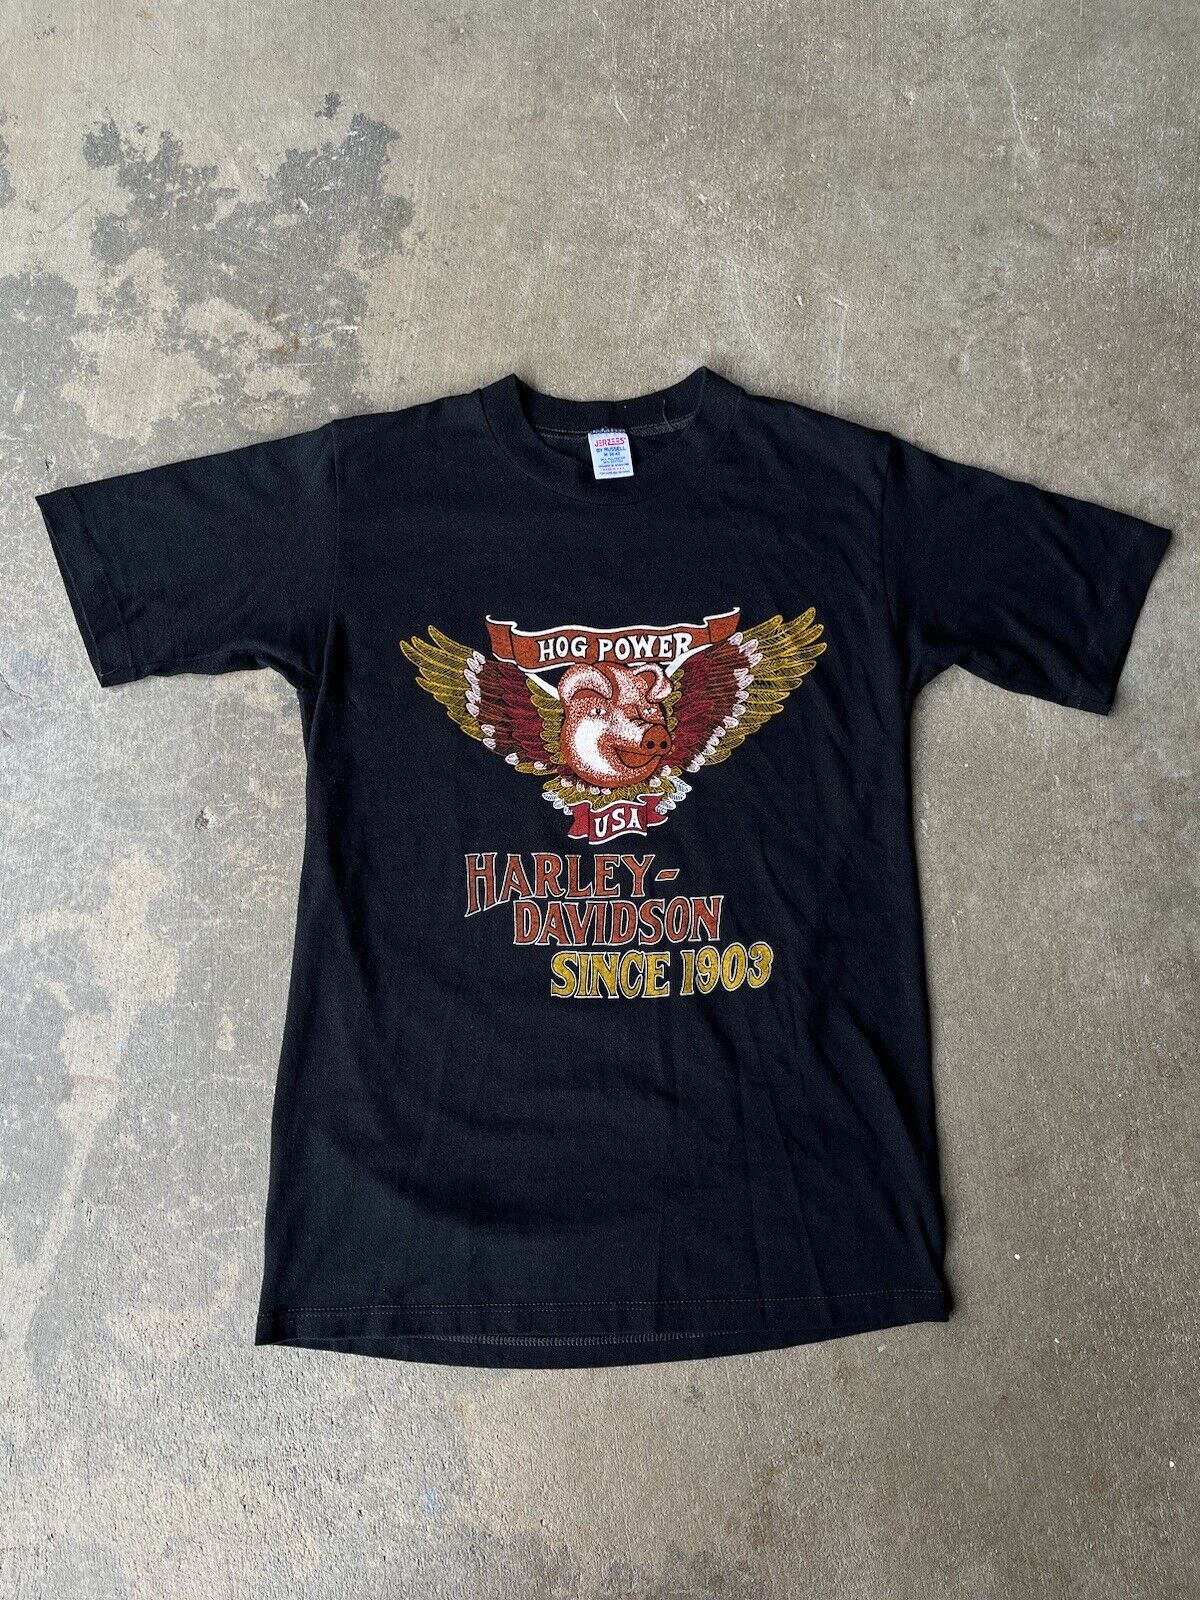 Vintage Harley Davidson Hog Power T Shirt Original 80's (M) 38-40 Jerzees Tag